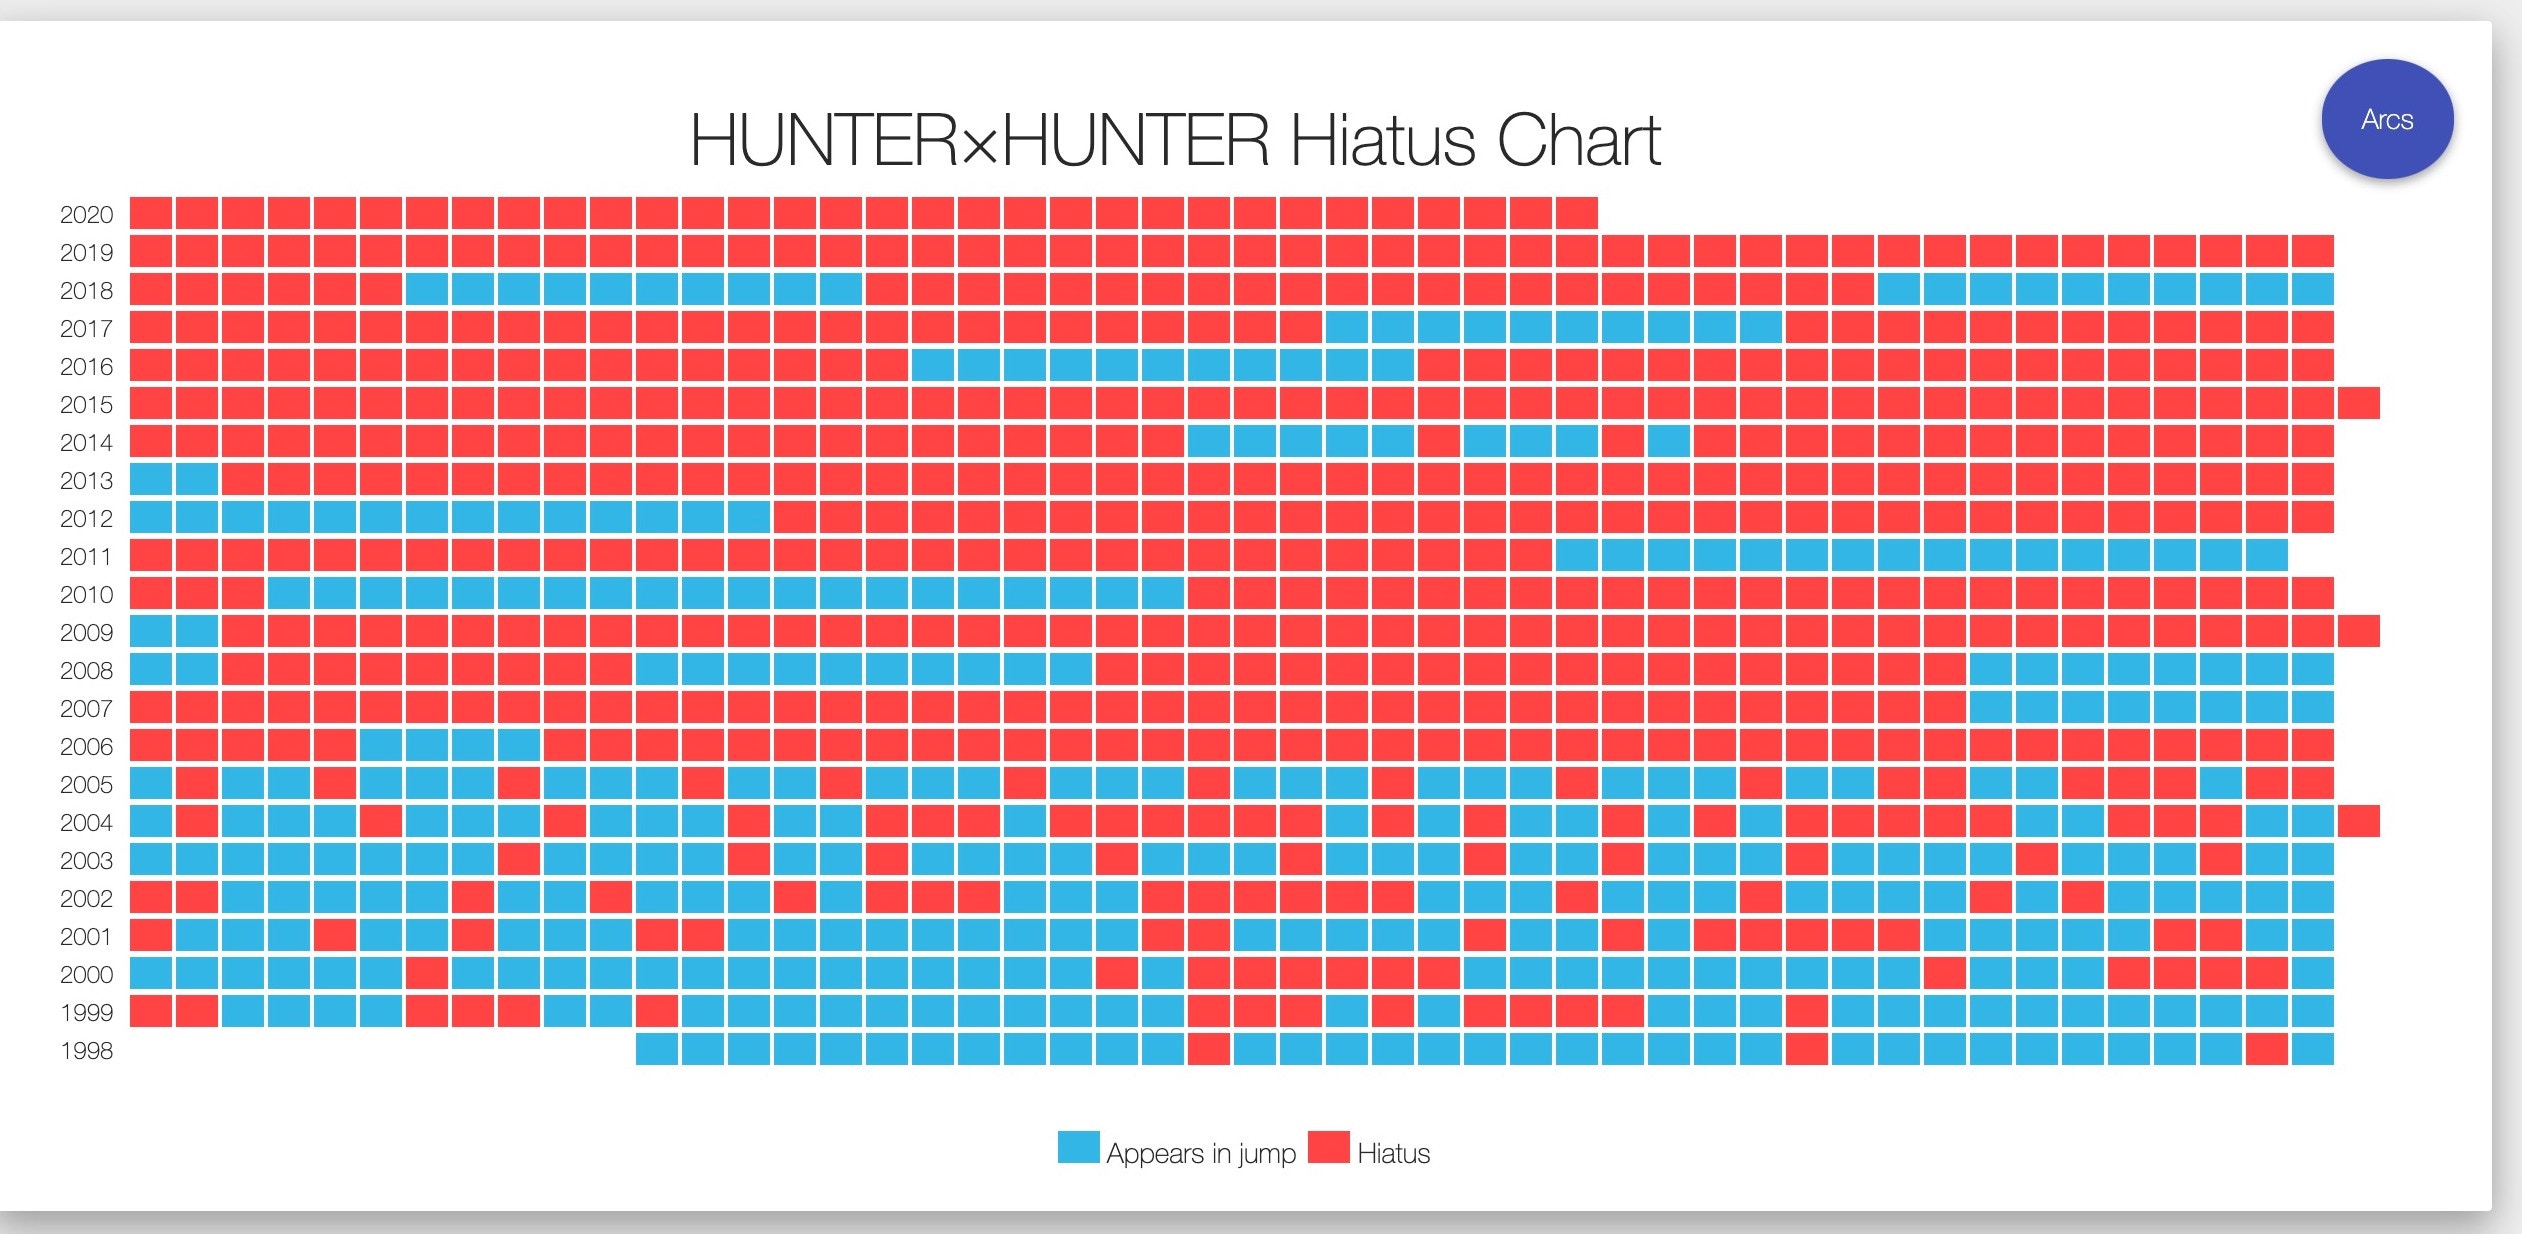 全職獵人hunter Hunter休刊再破紀錄冨樫打機追欅坂休刊10件事